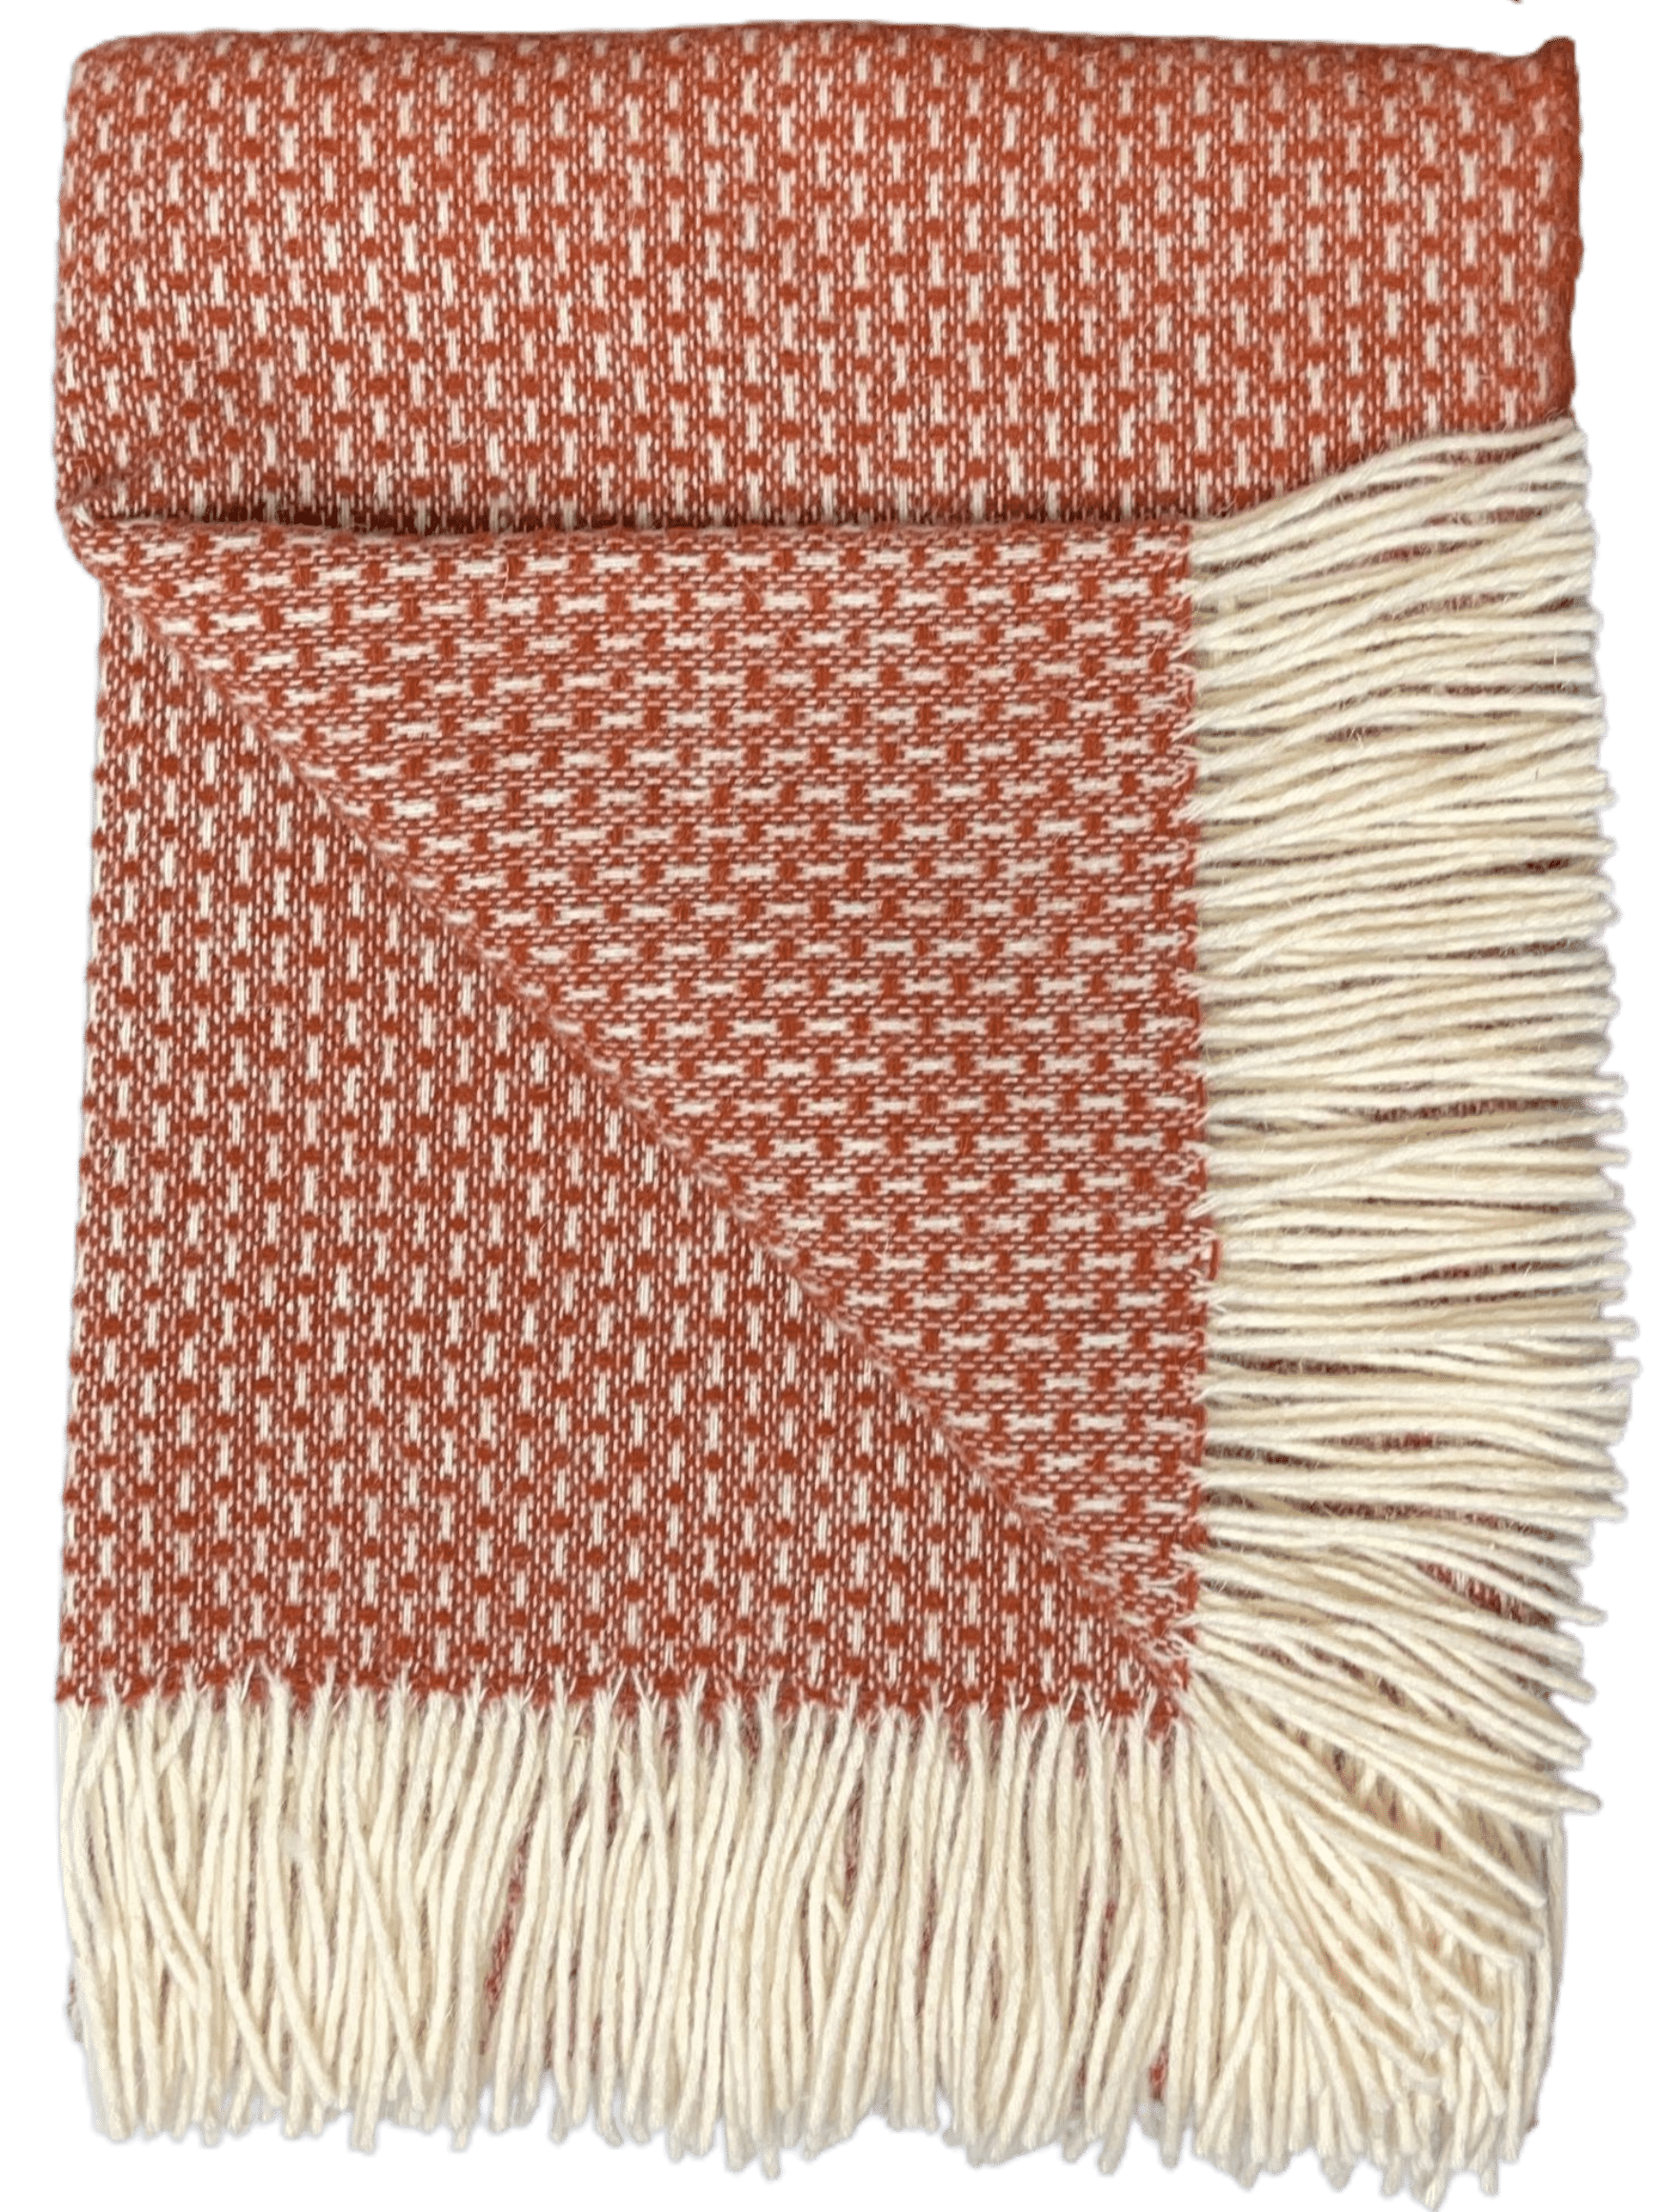 Uldplaiden tæppe Uldplaid i 100% uld 140x200 cm.- Rustfarvet m. mønster 5713931011810 otherstuff